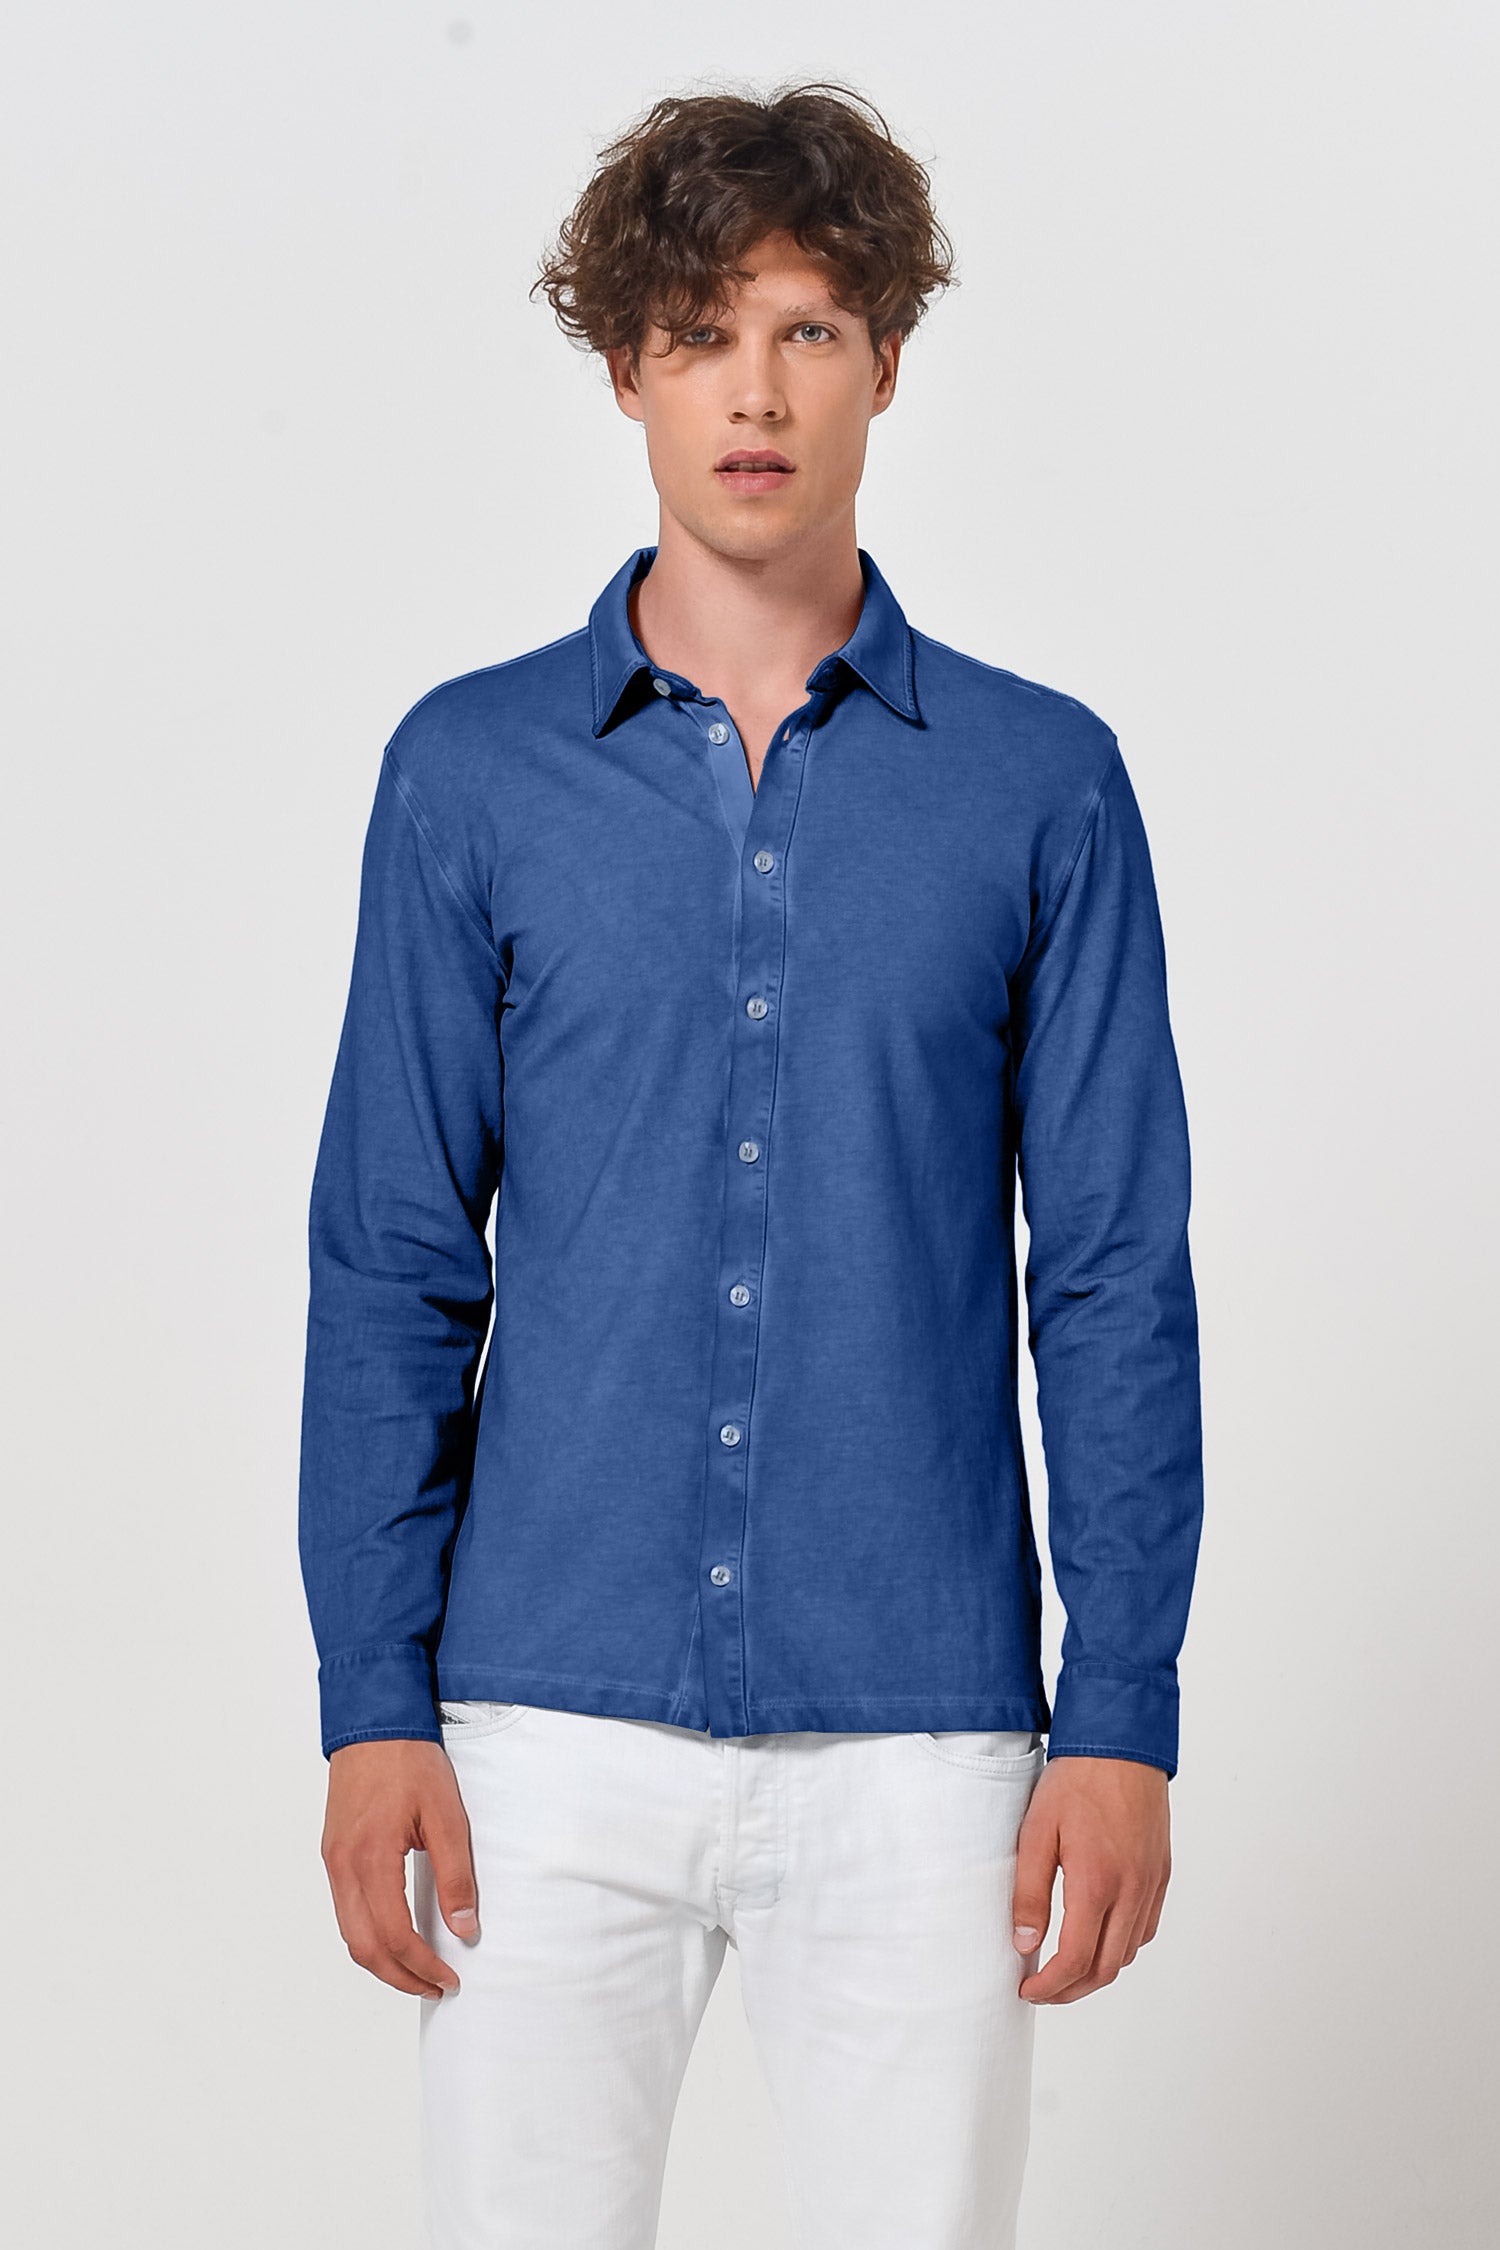 Cotton Pique Shirt - Pacific